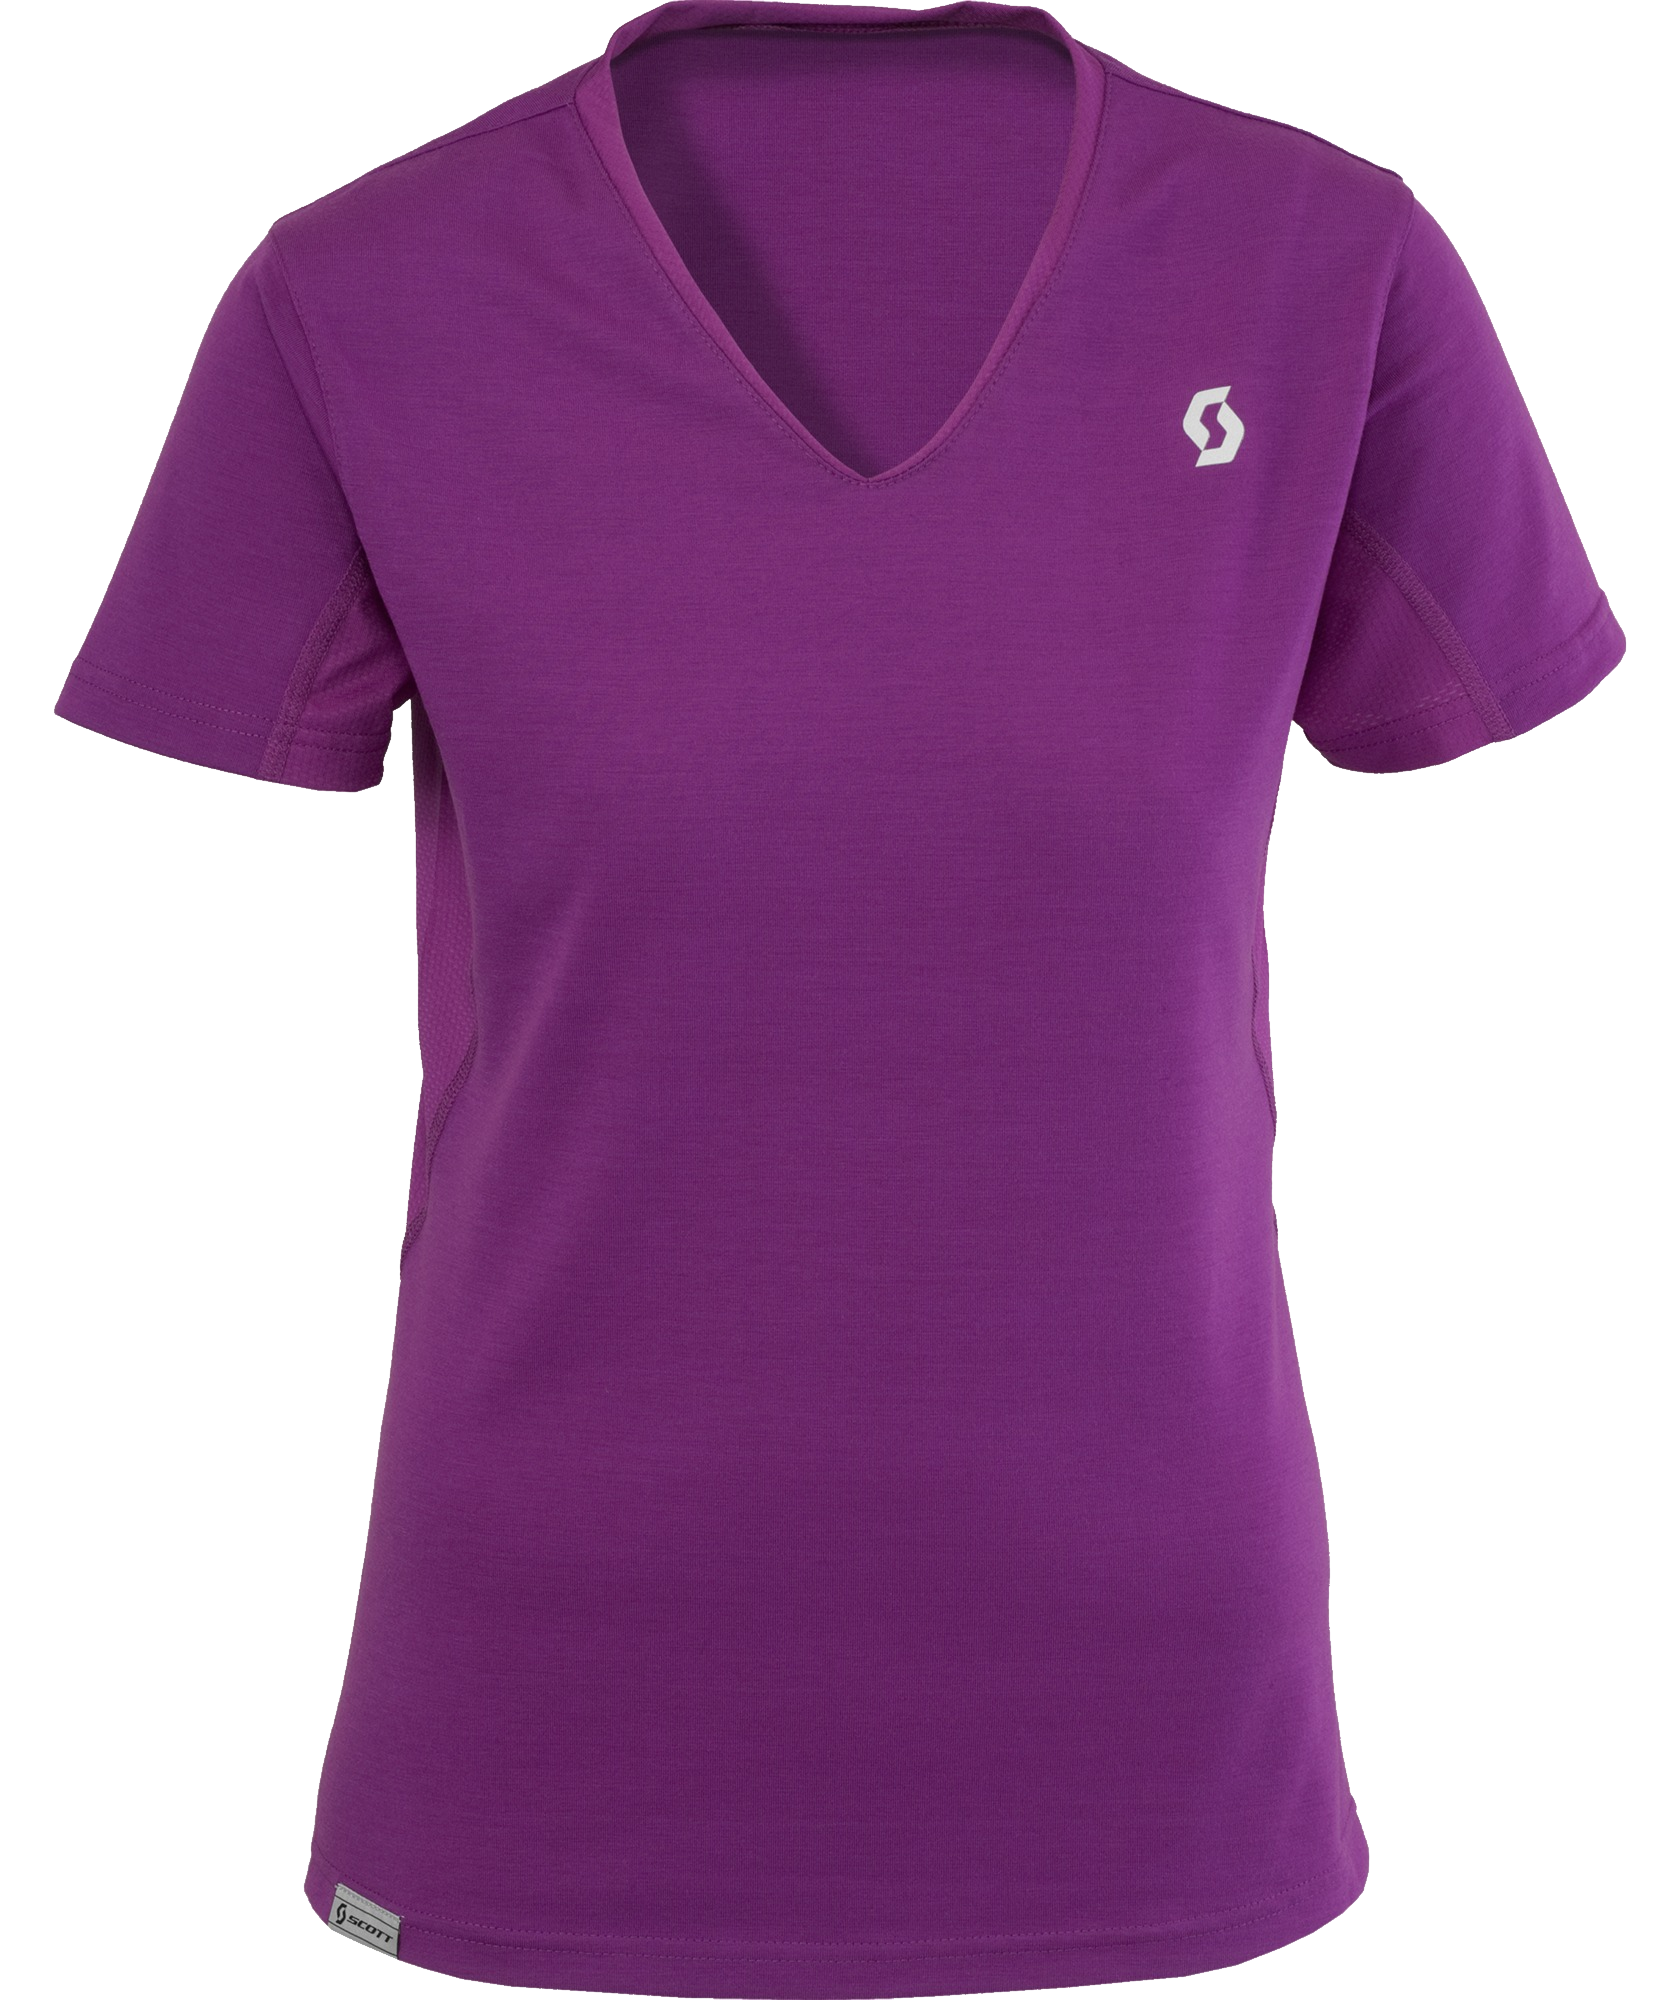 Purple Polo Shirt PNG Image